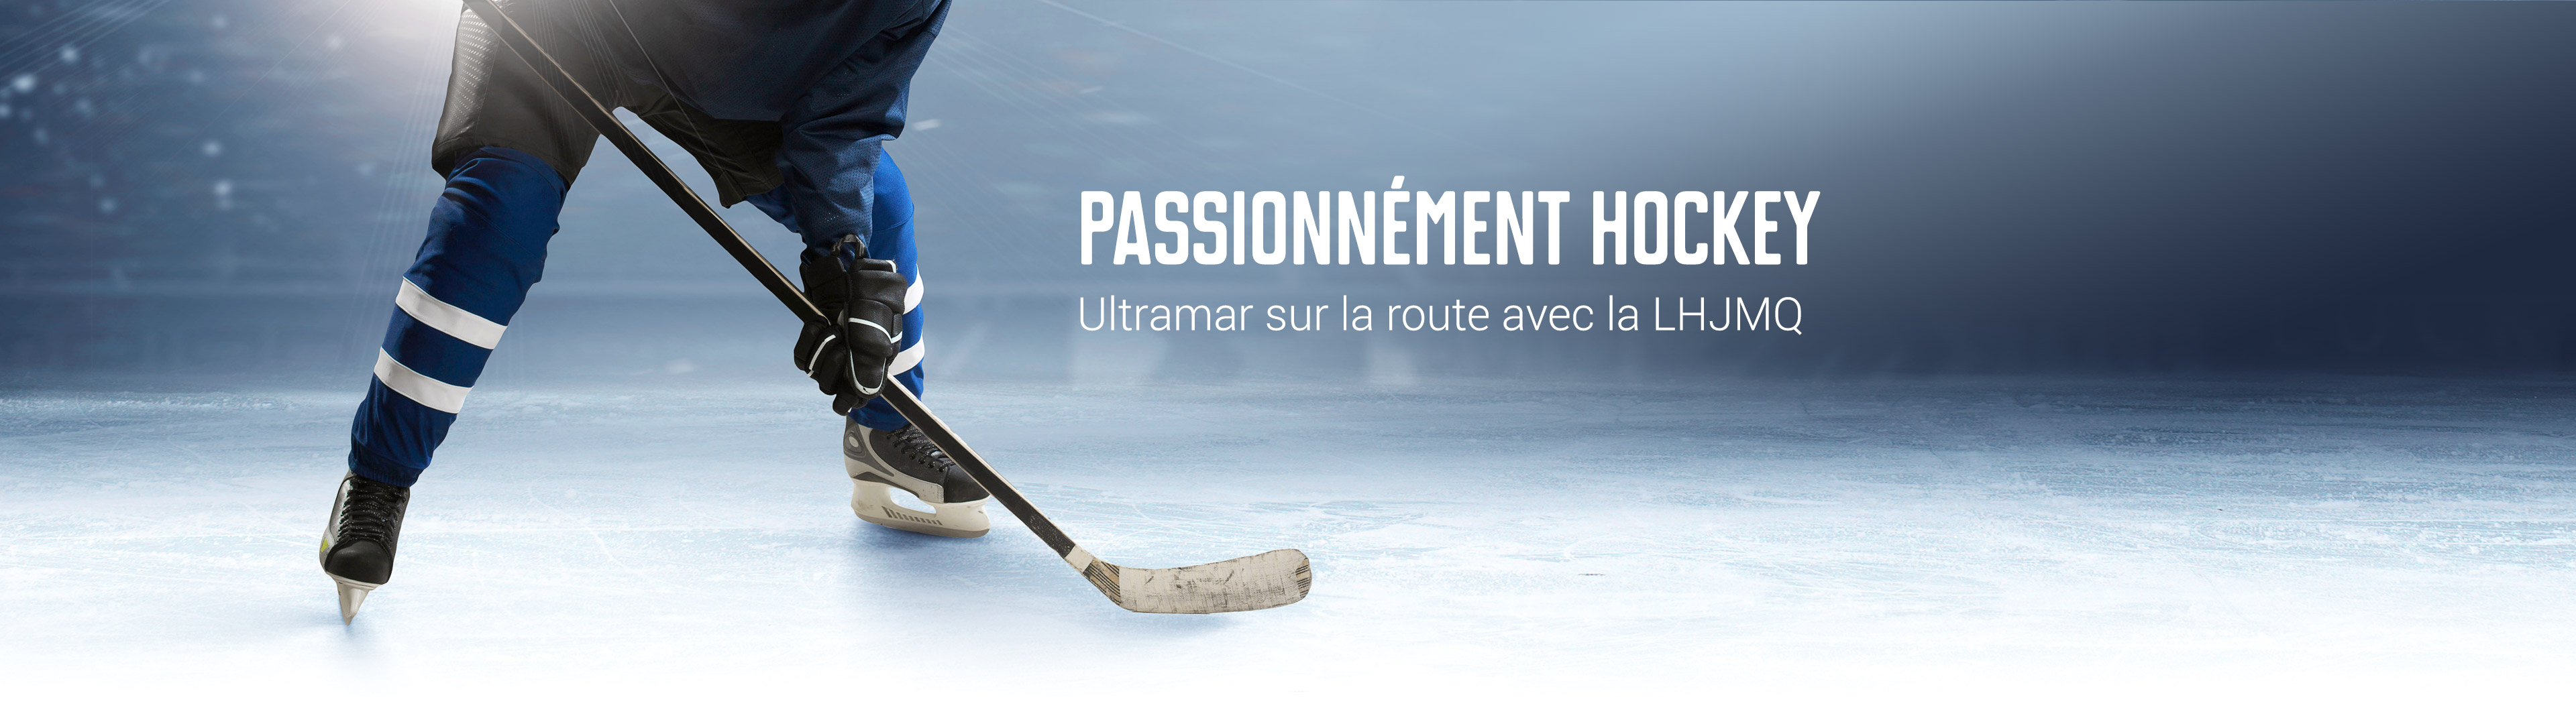 Passionnément hockey - Ultramar sur la route avec la LHJMQ